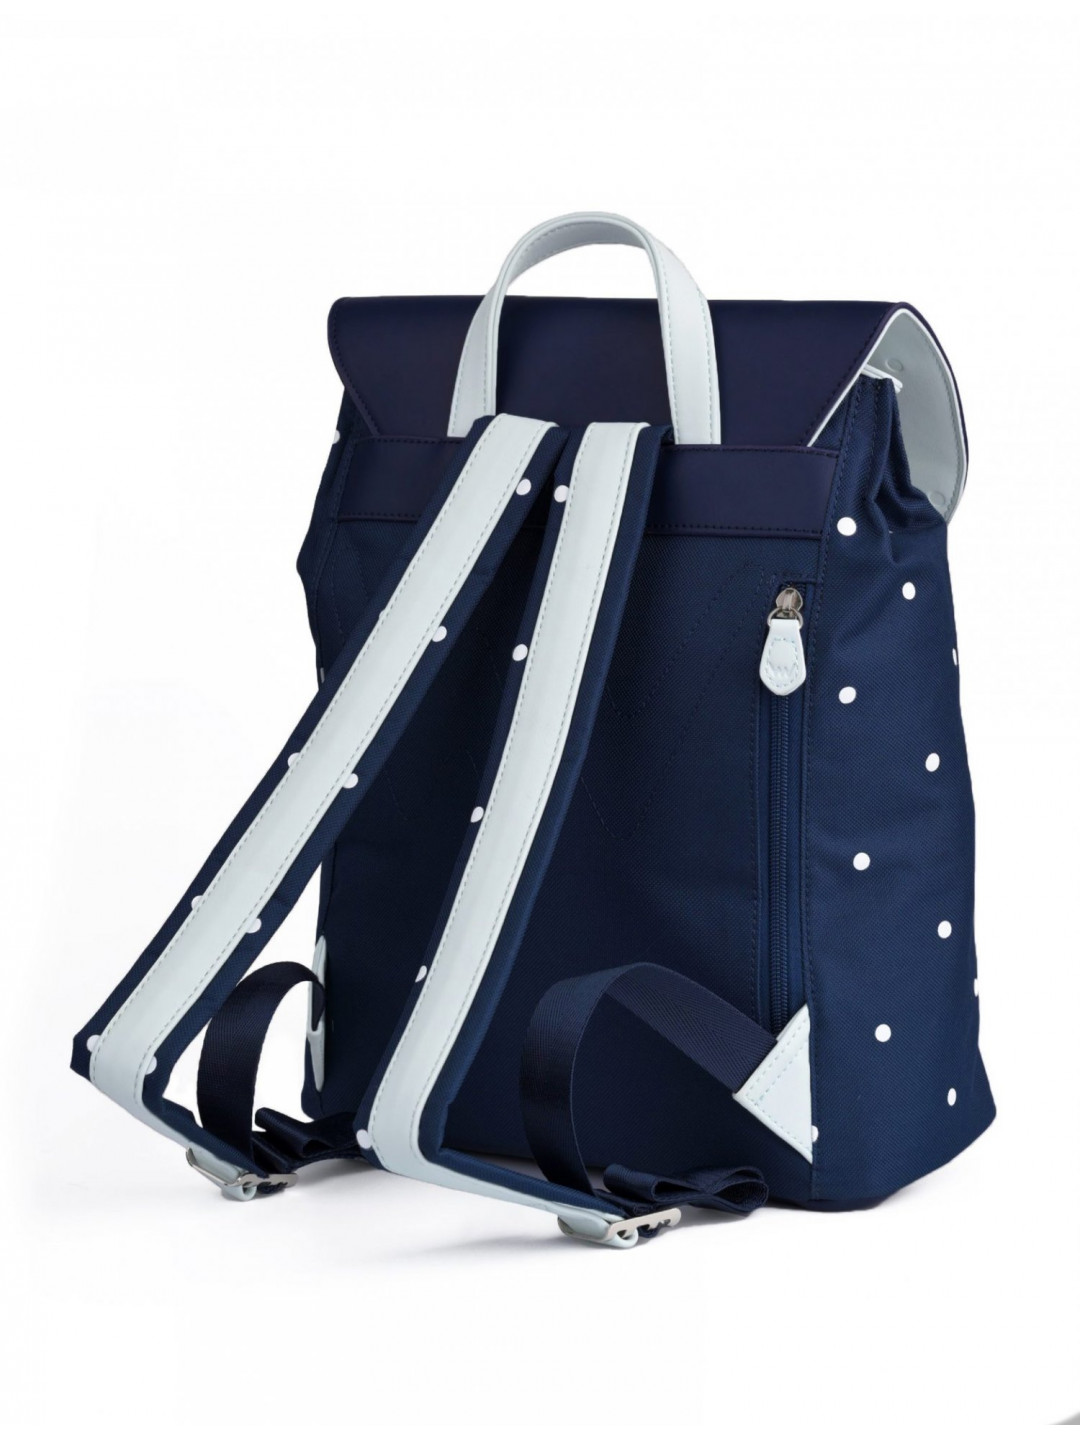 Moderní dámský puntíkatý batoh VUCH Hasling tmavě modrý